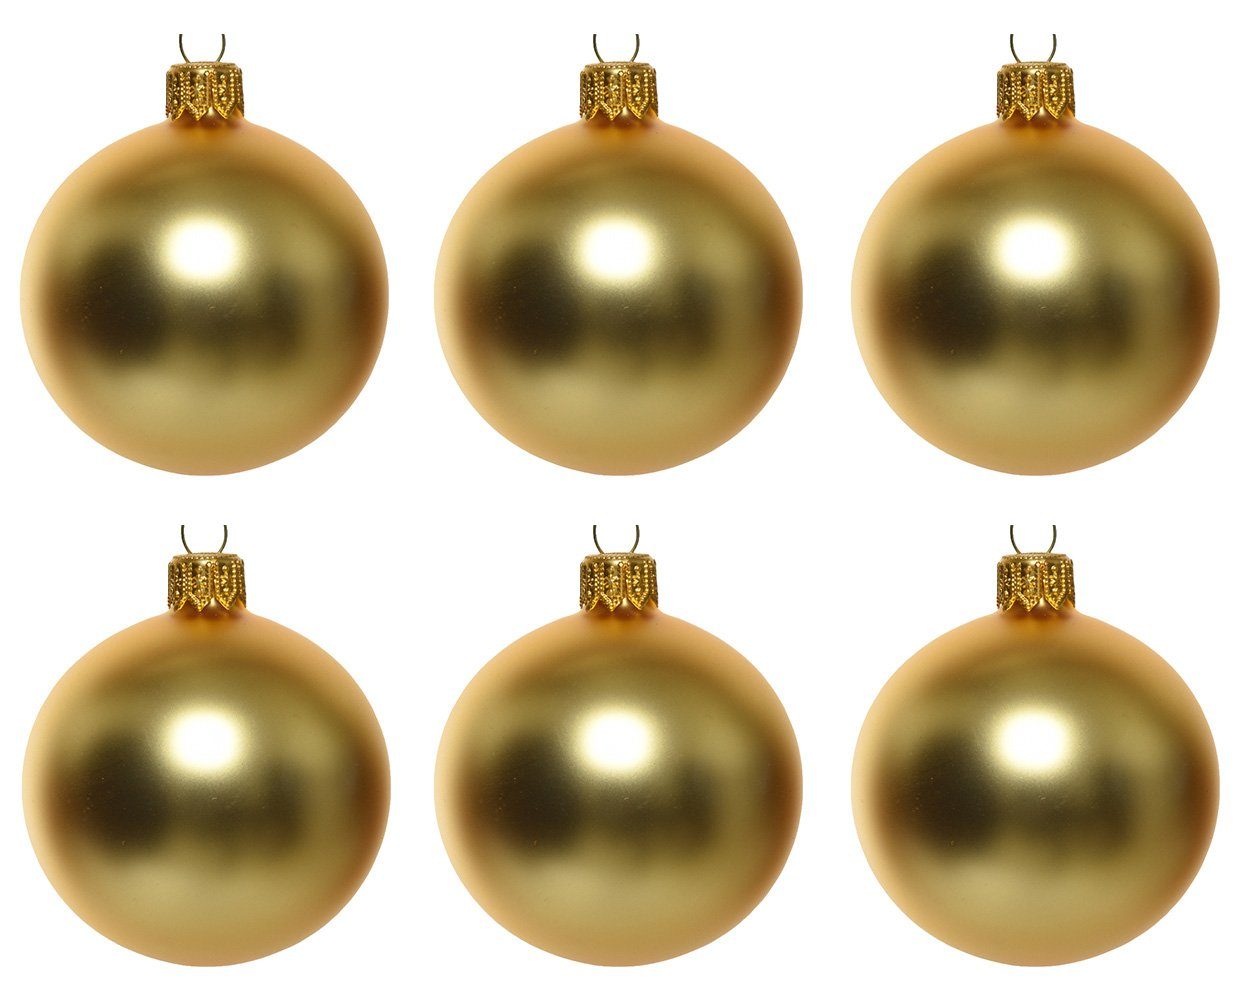 Decoris season decorations Christbaumschmuck, Weihnachtskugeln Glas 6cm mundgeblasen 6er Box - Hellgold matt